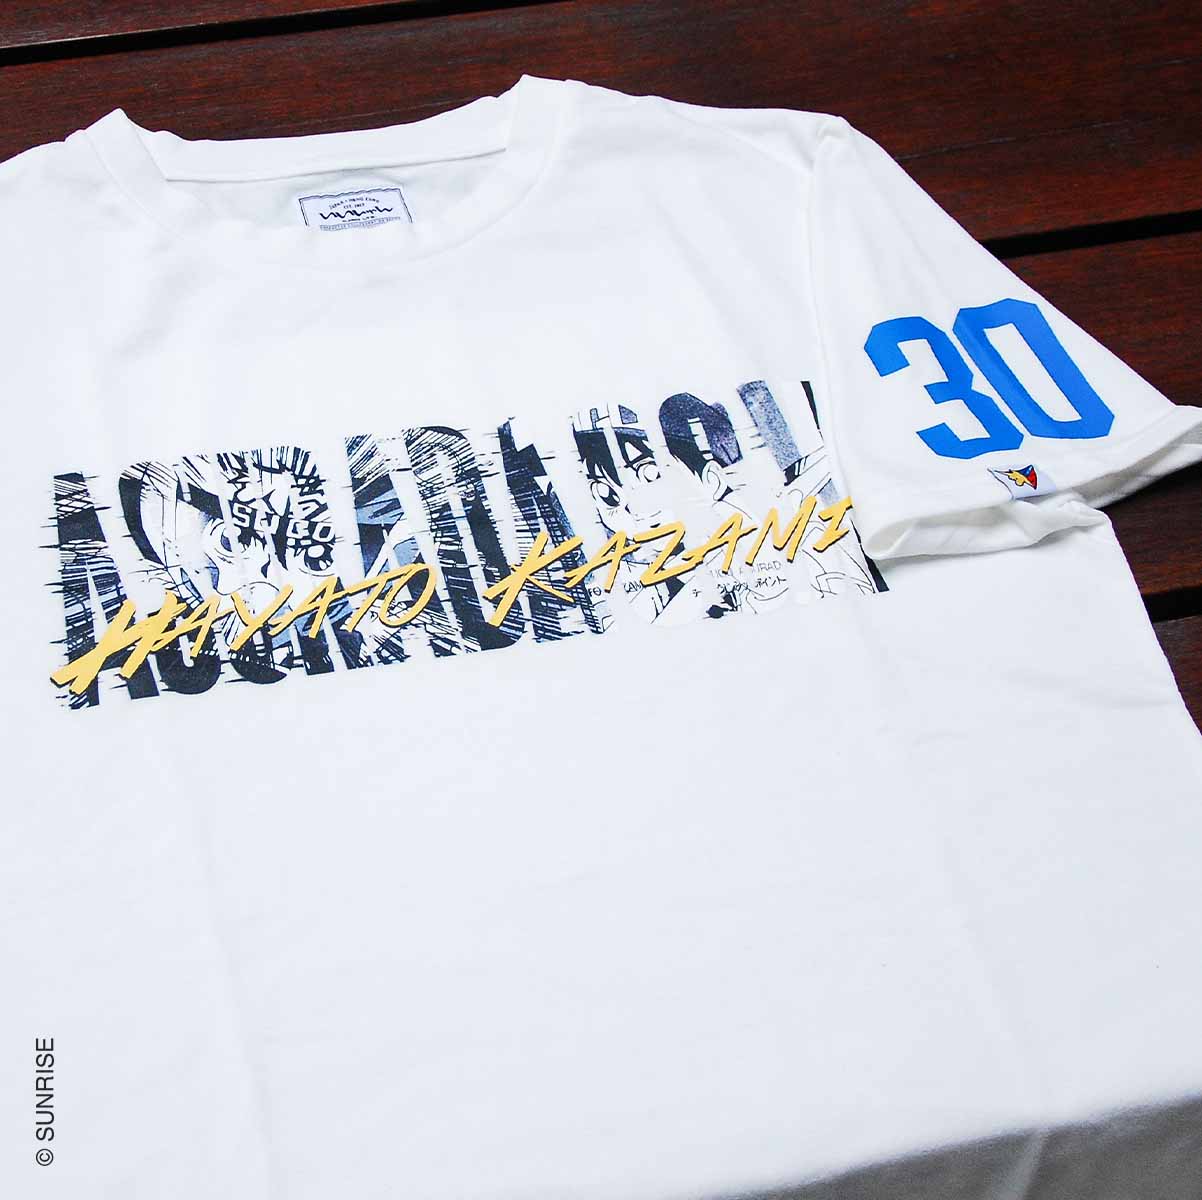 新世紀GPXサイバーフォーミュラ WORLD TOUR 香港GP記念Tシャツ 「風見ハヤト」